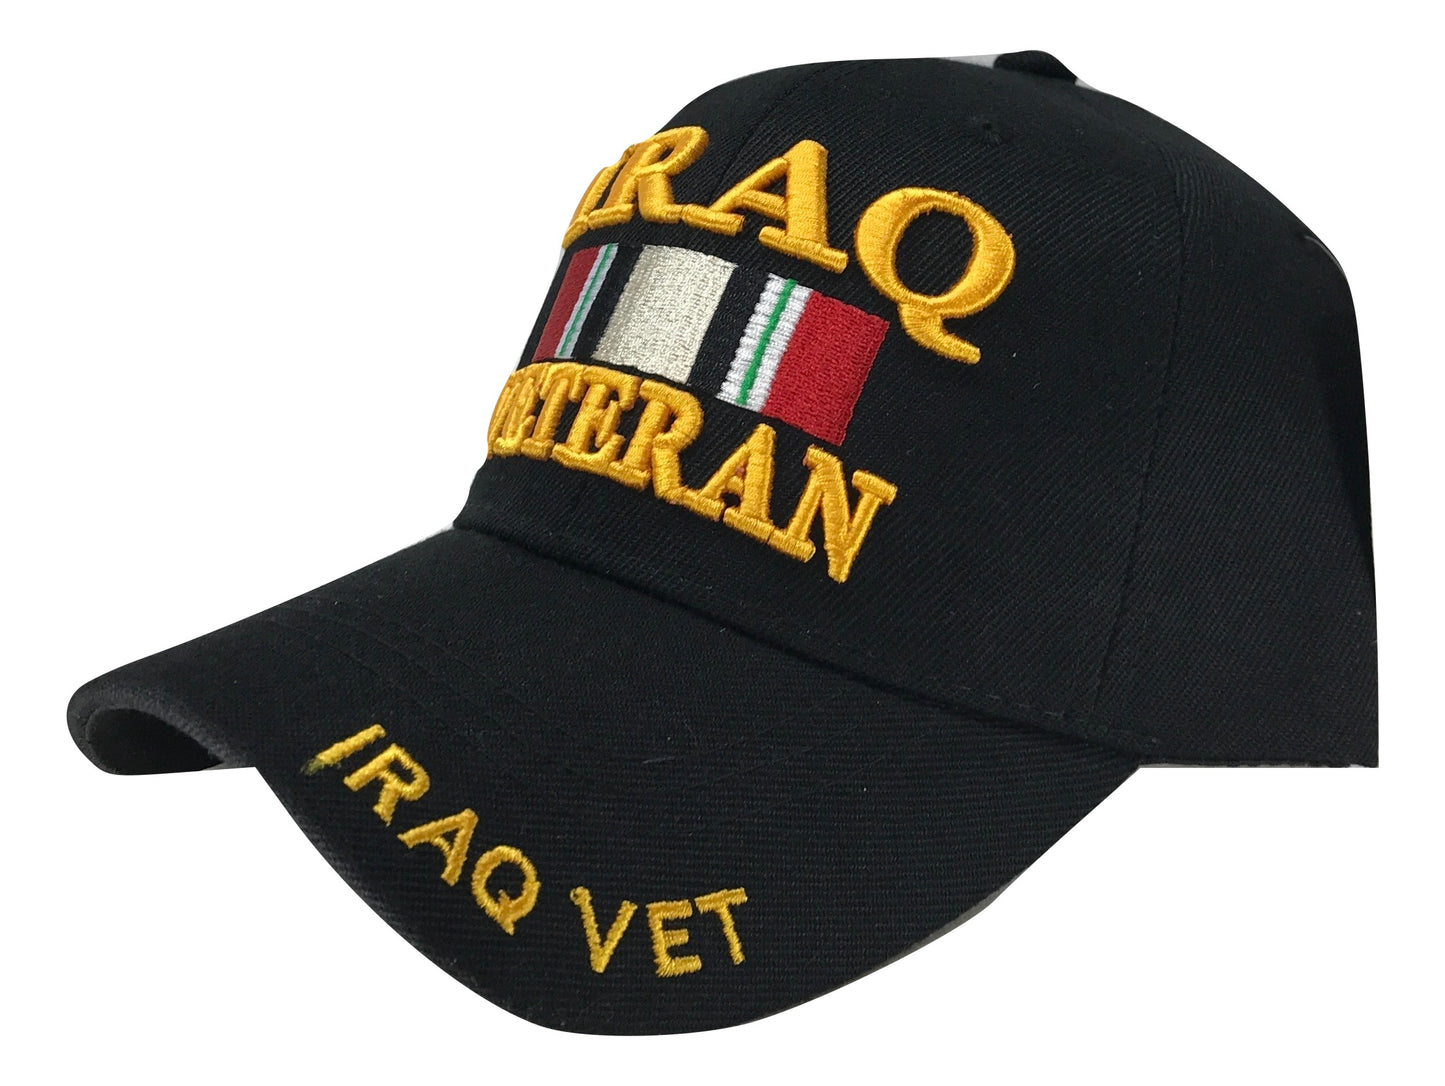 Iraq Veteran Cap